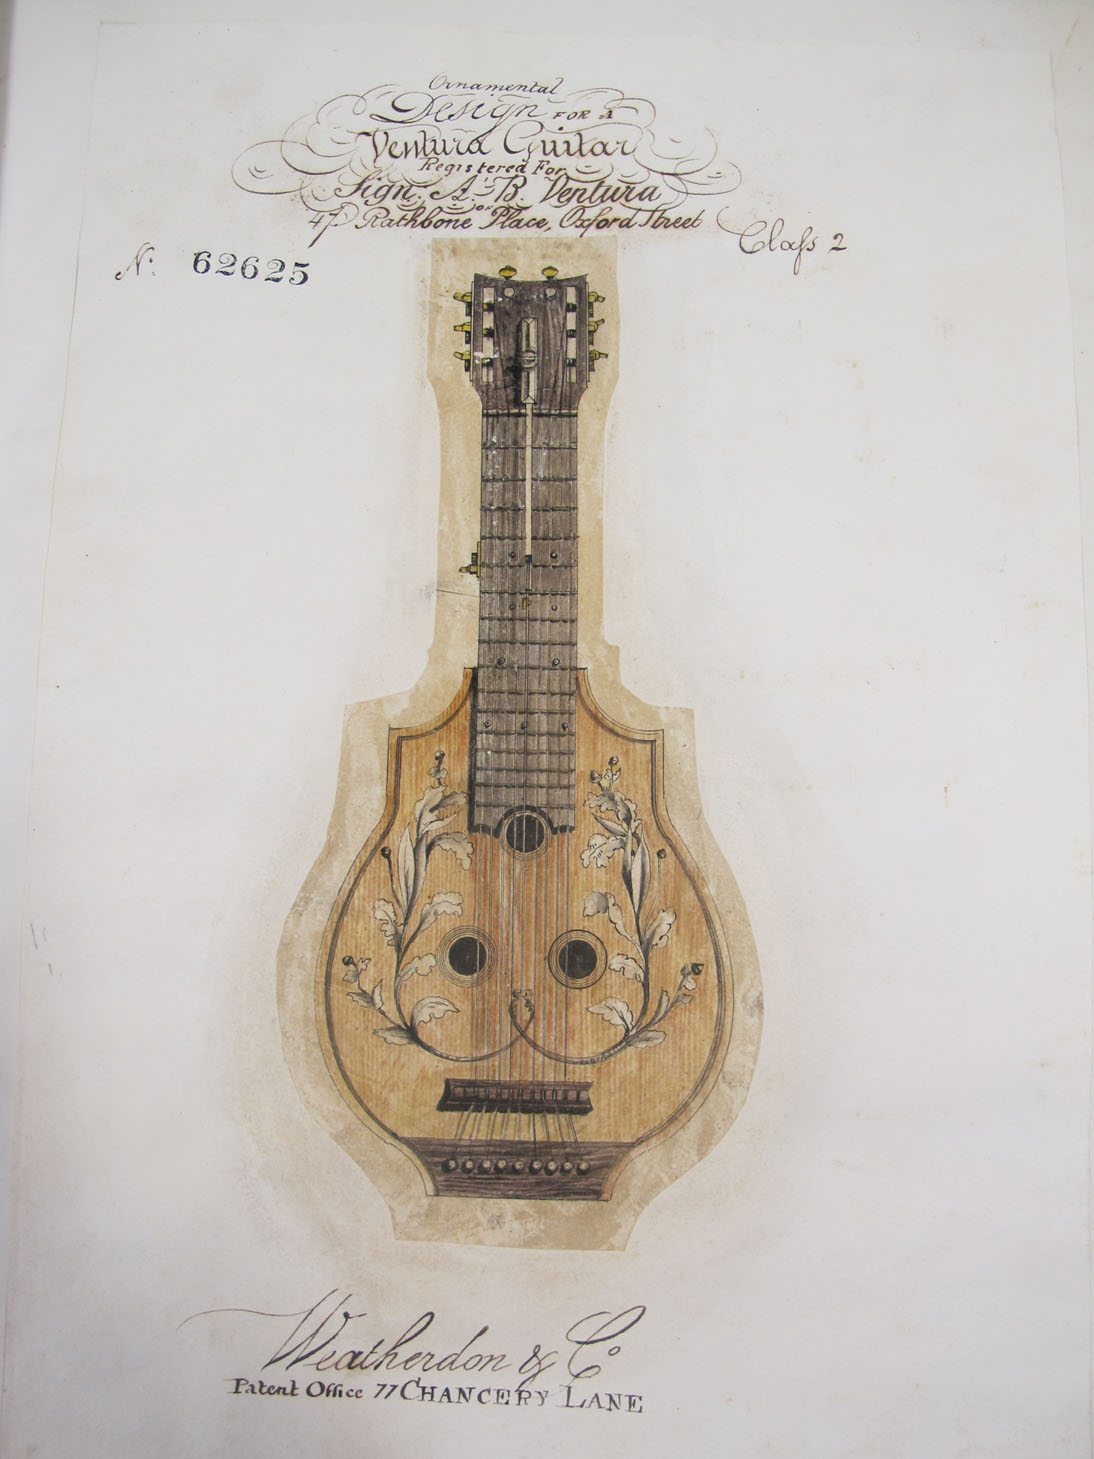 Drawing of Ventura guitar